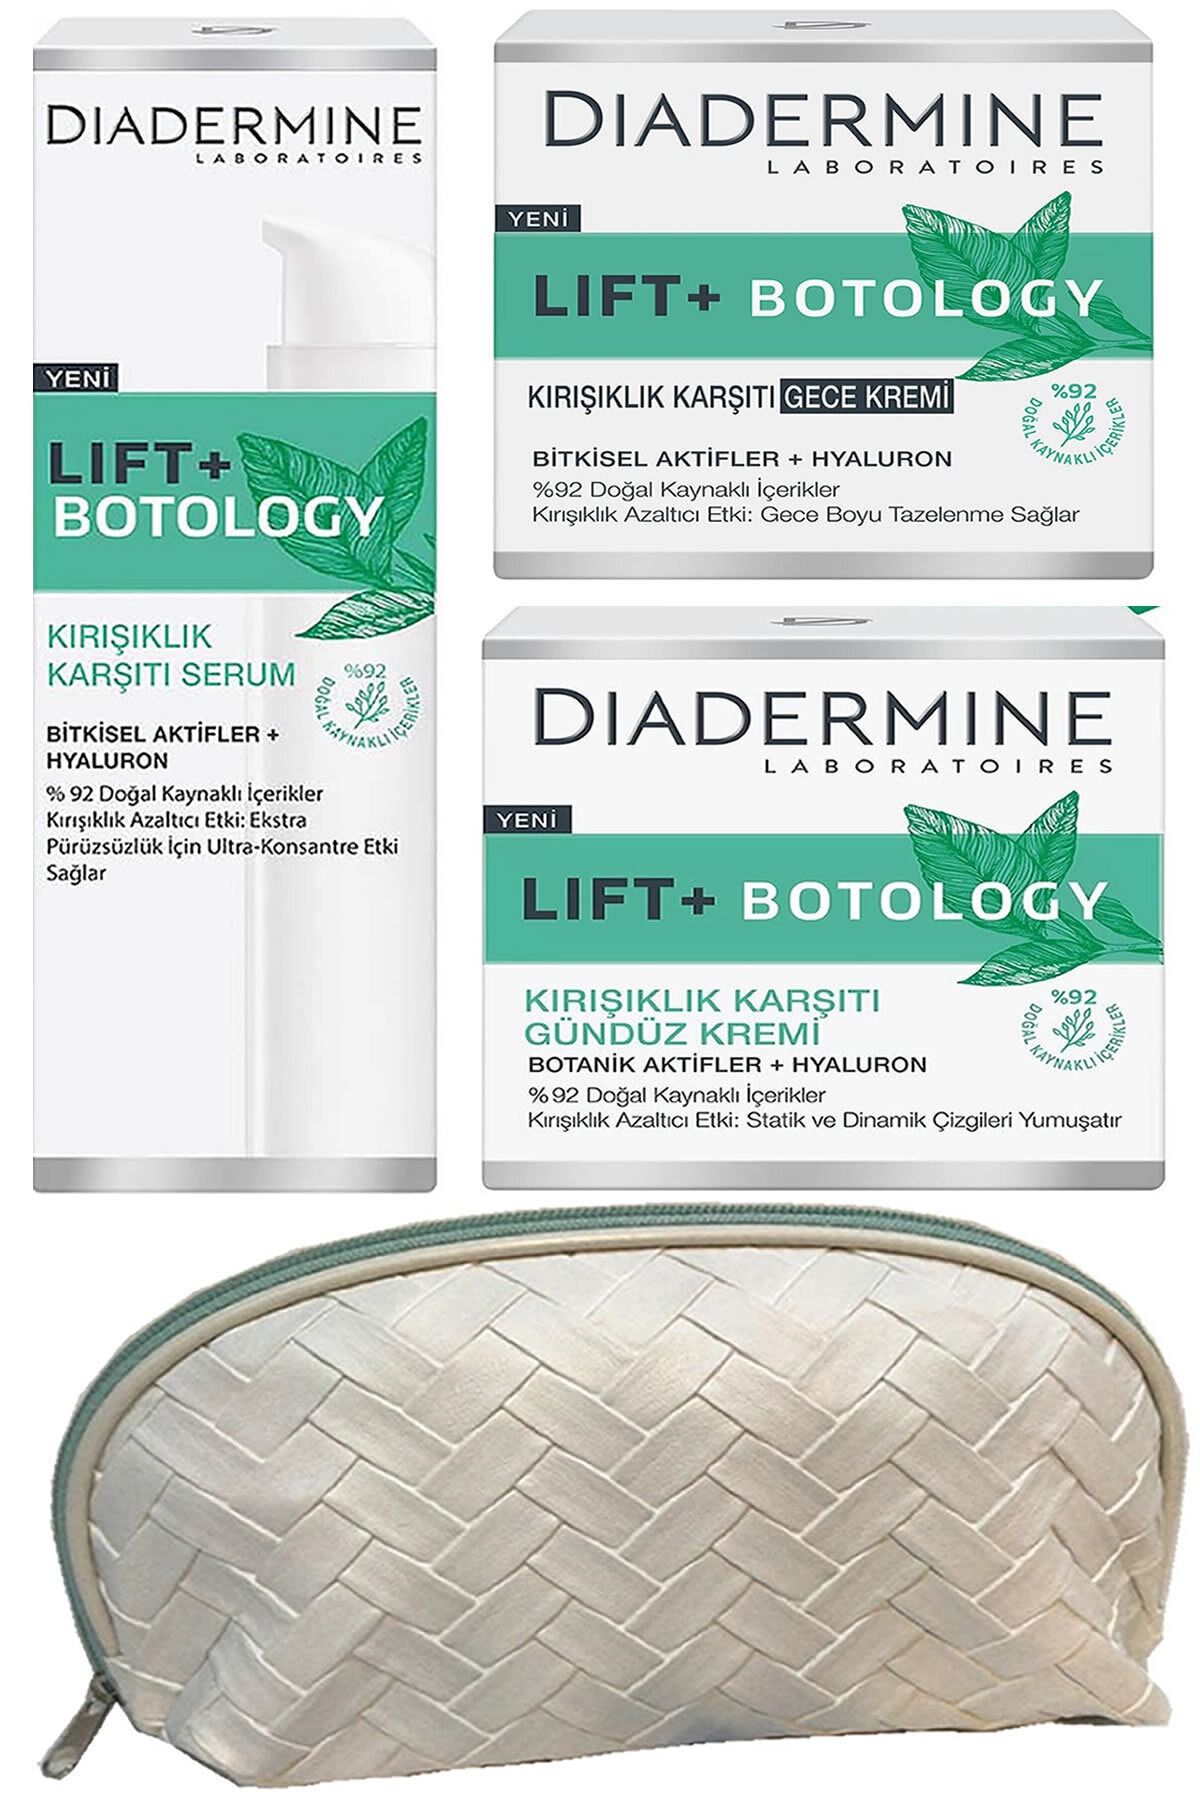 Diadermine Lift+ Botology Kırışık Karşıtı Gündüz + Gece Kremi + Serum + çanta